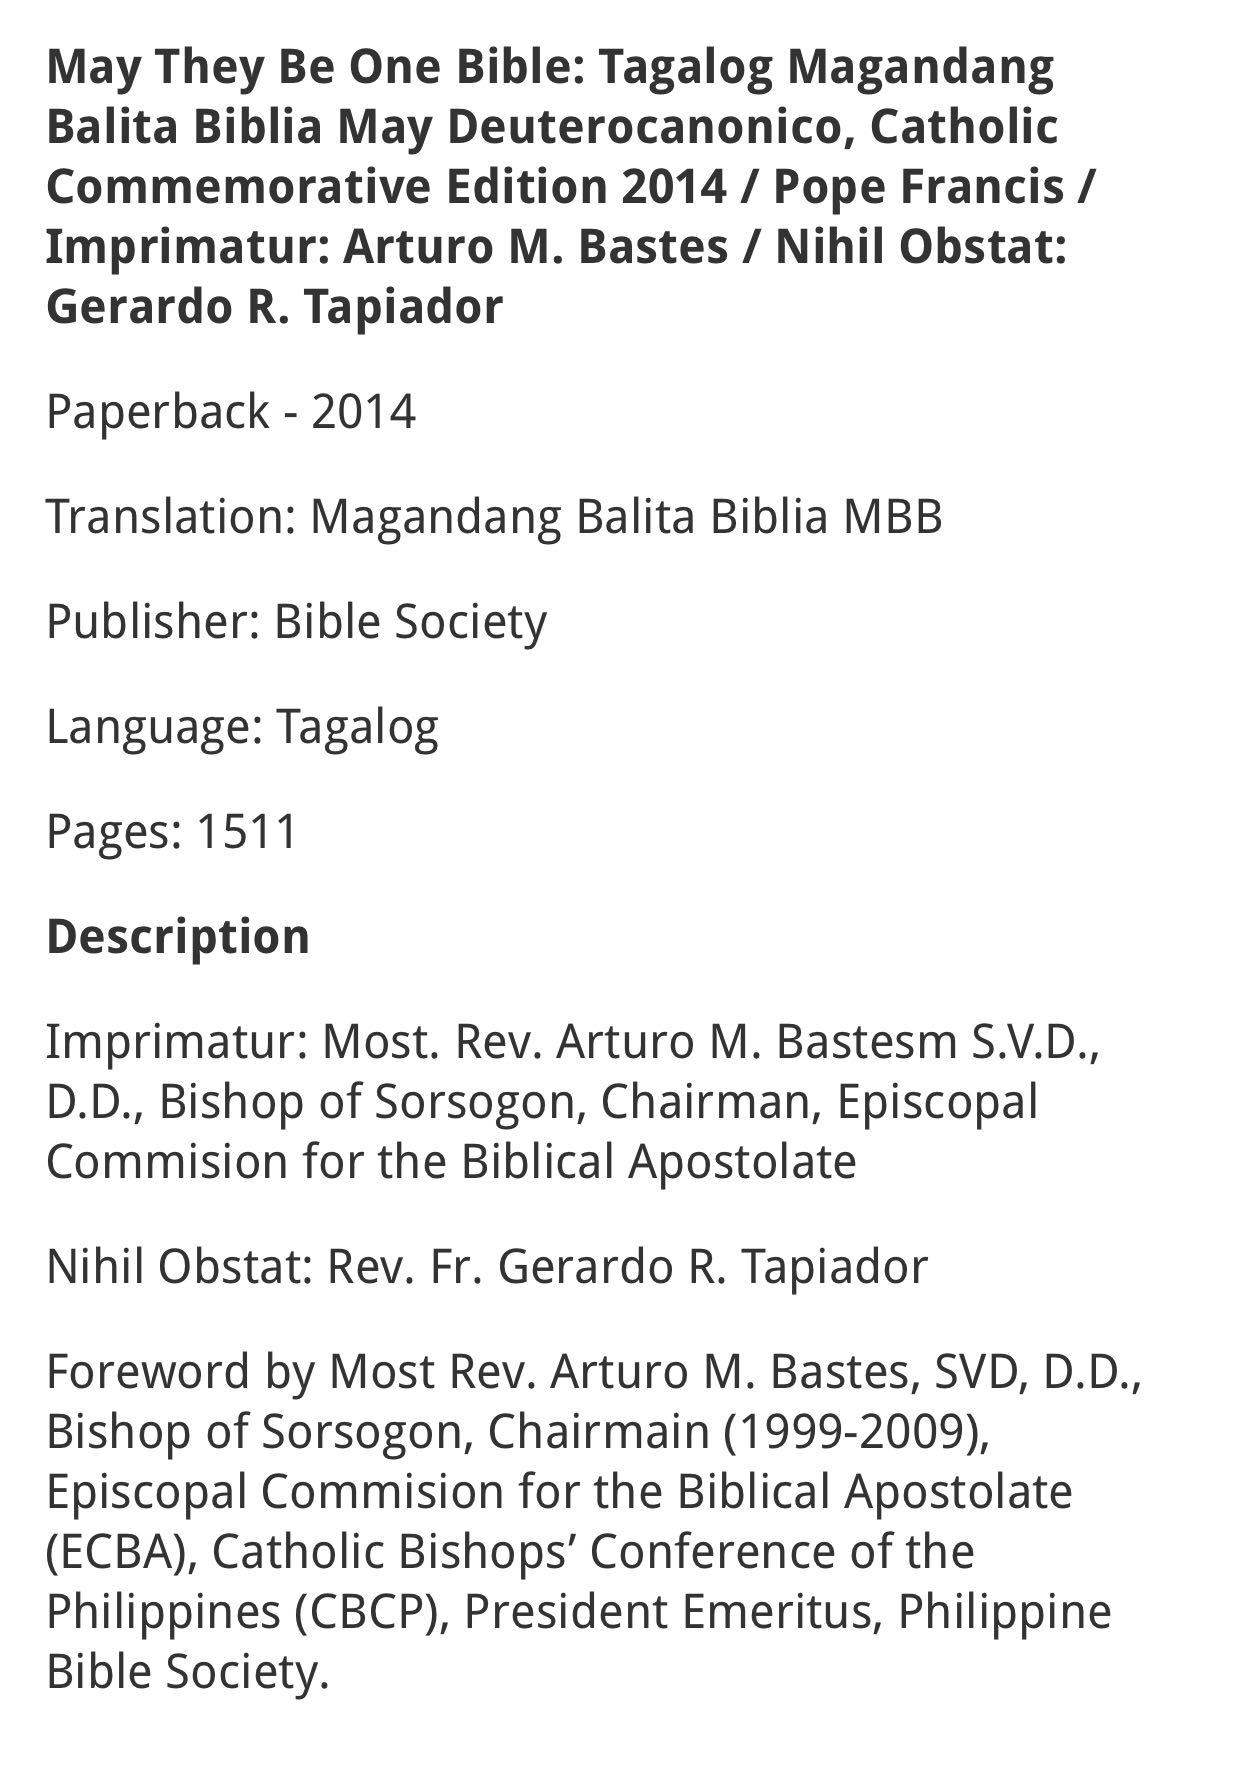 May They Be One Bible Magandang Balita Biblia By May Deuterocanonico Tagalog Hobbies Toys